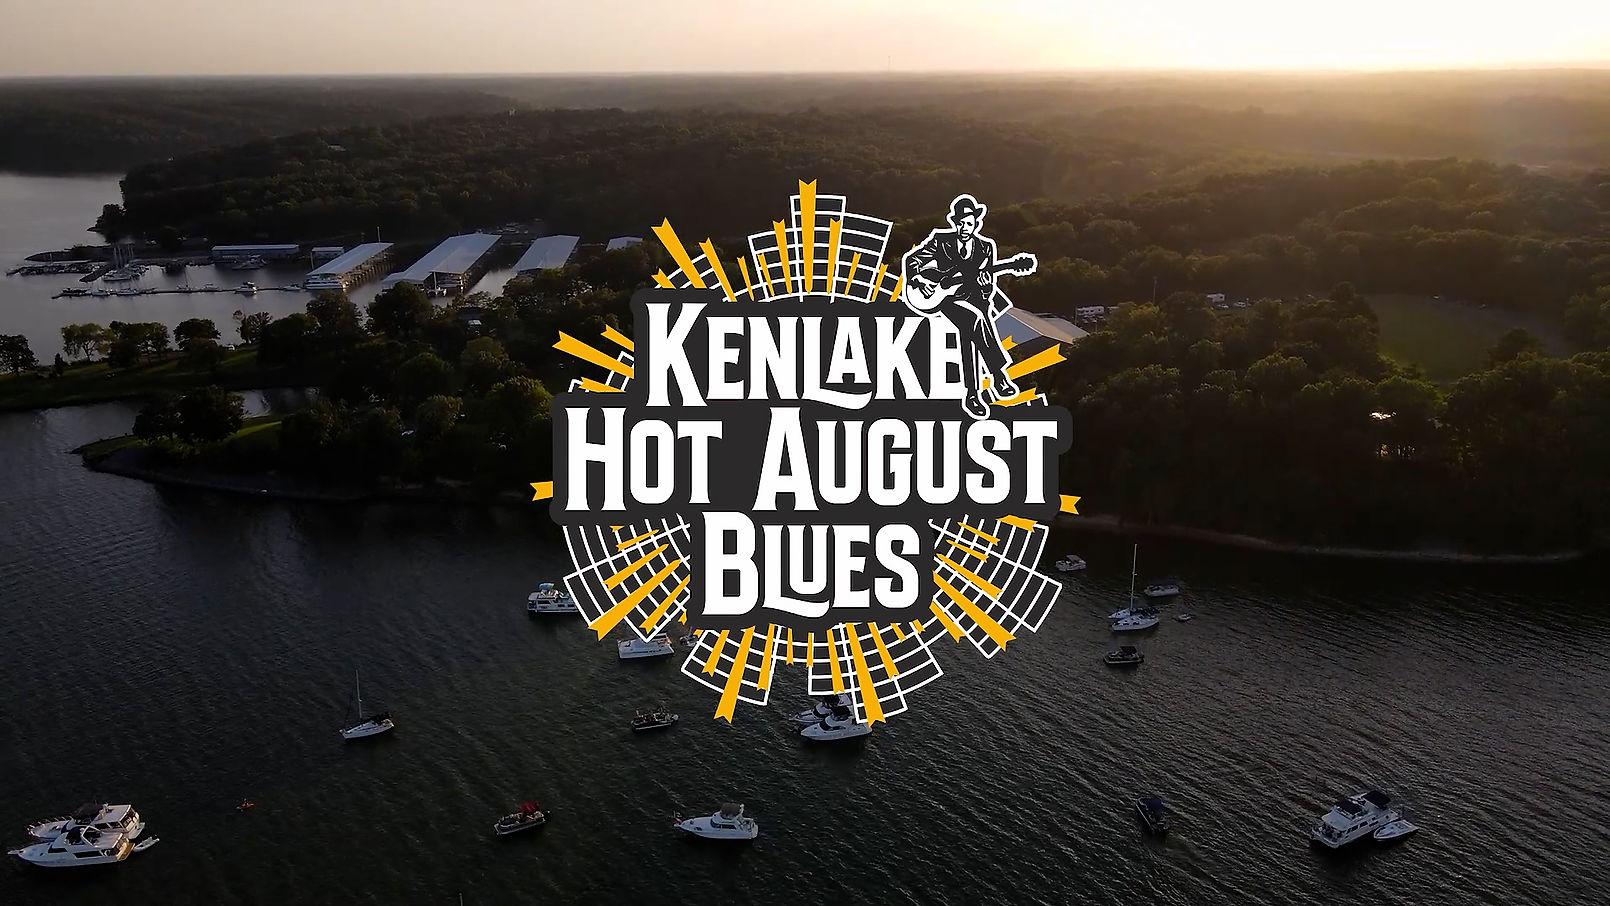 Kentucky Hot August Blues Festival